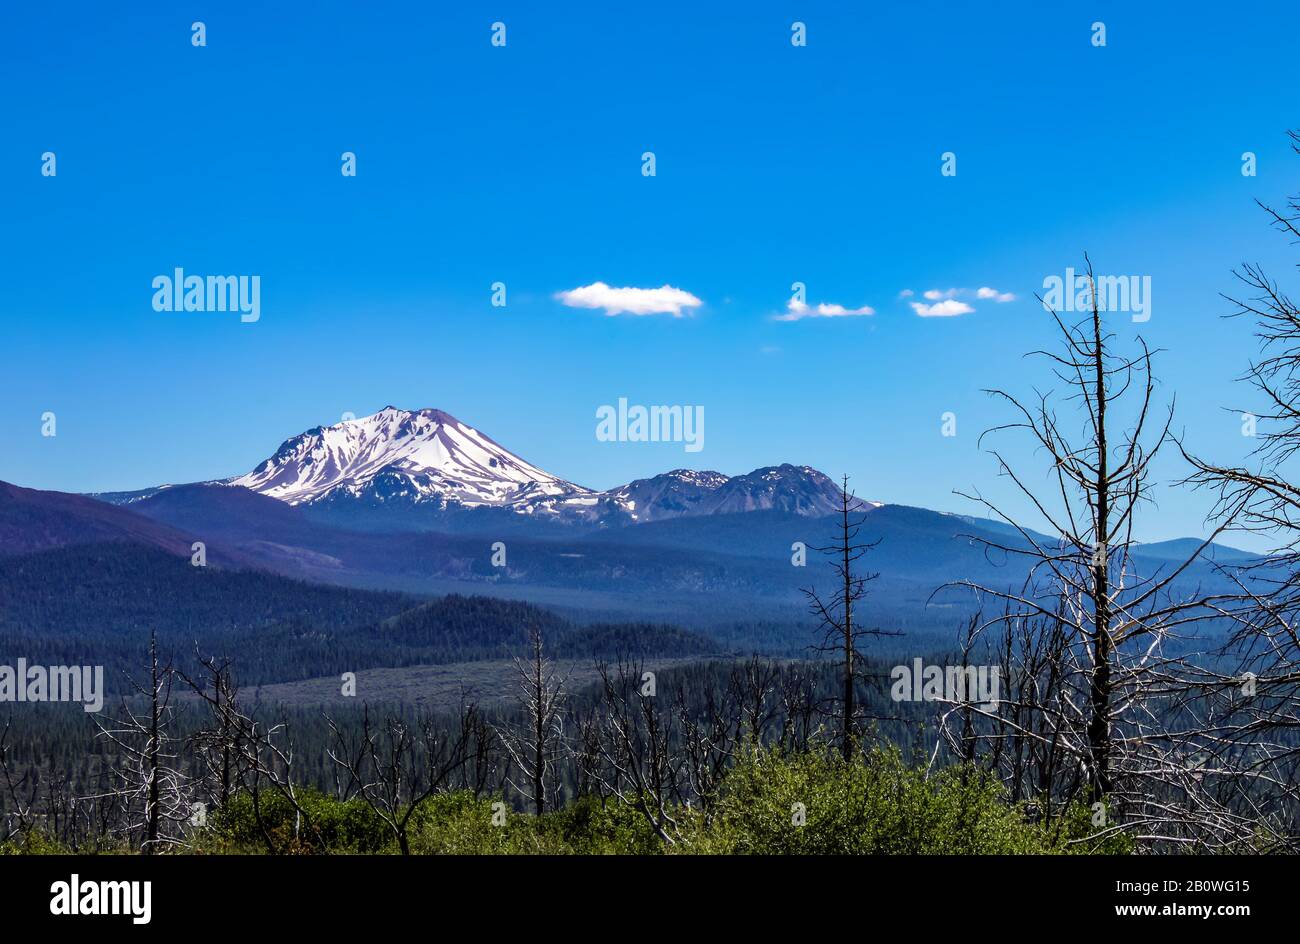 Cima innevata del bellissimo Monte Shasta nel nord-ovest degli Stati Uniti con tronchi di alberi bruciati in primo piano Foto Stock